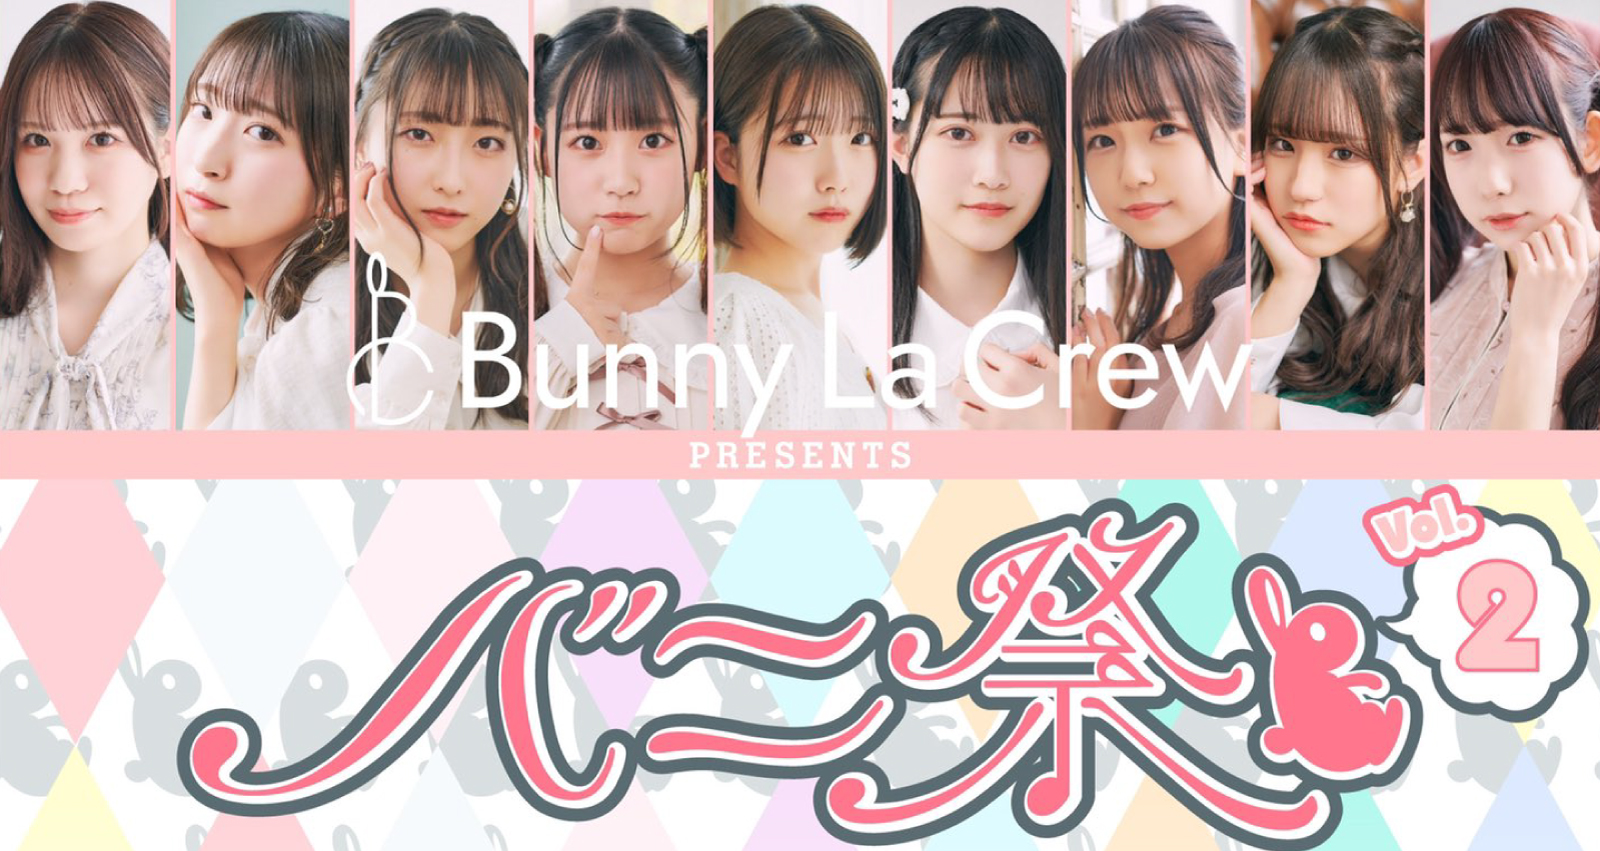 Bunny La Crew presents 『バニ祭 vol.2』